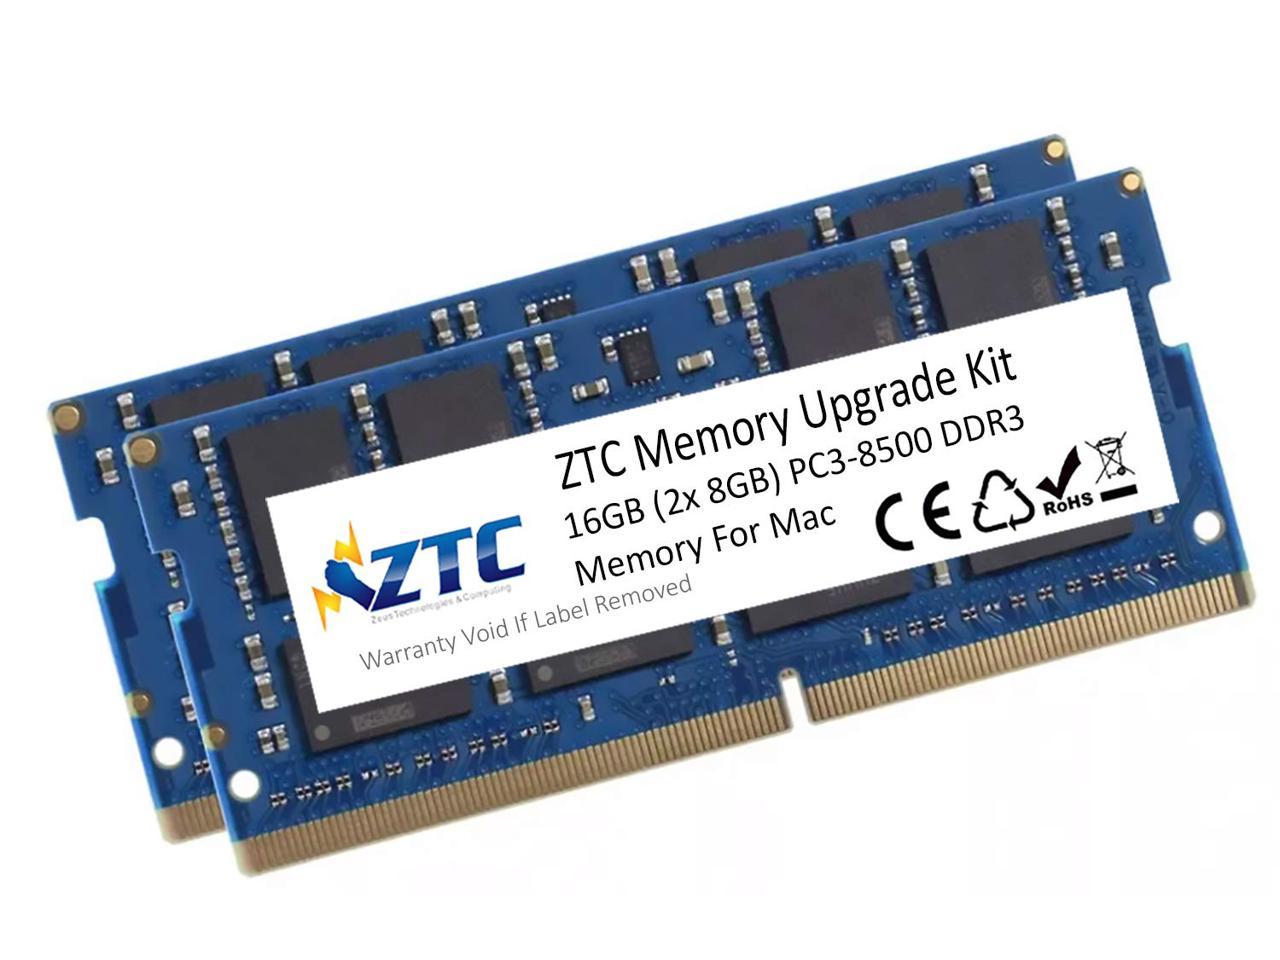 ZTC 16GB (2X 8GB) PC3-8500 DDR3 kit for Mac Mini 2010, MacBook 2010, MacBook Pro 13" 2010